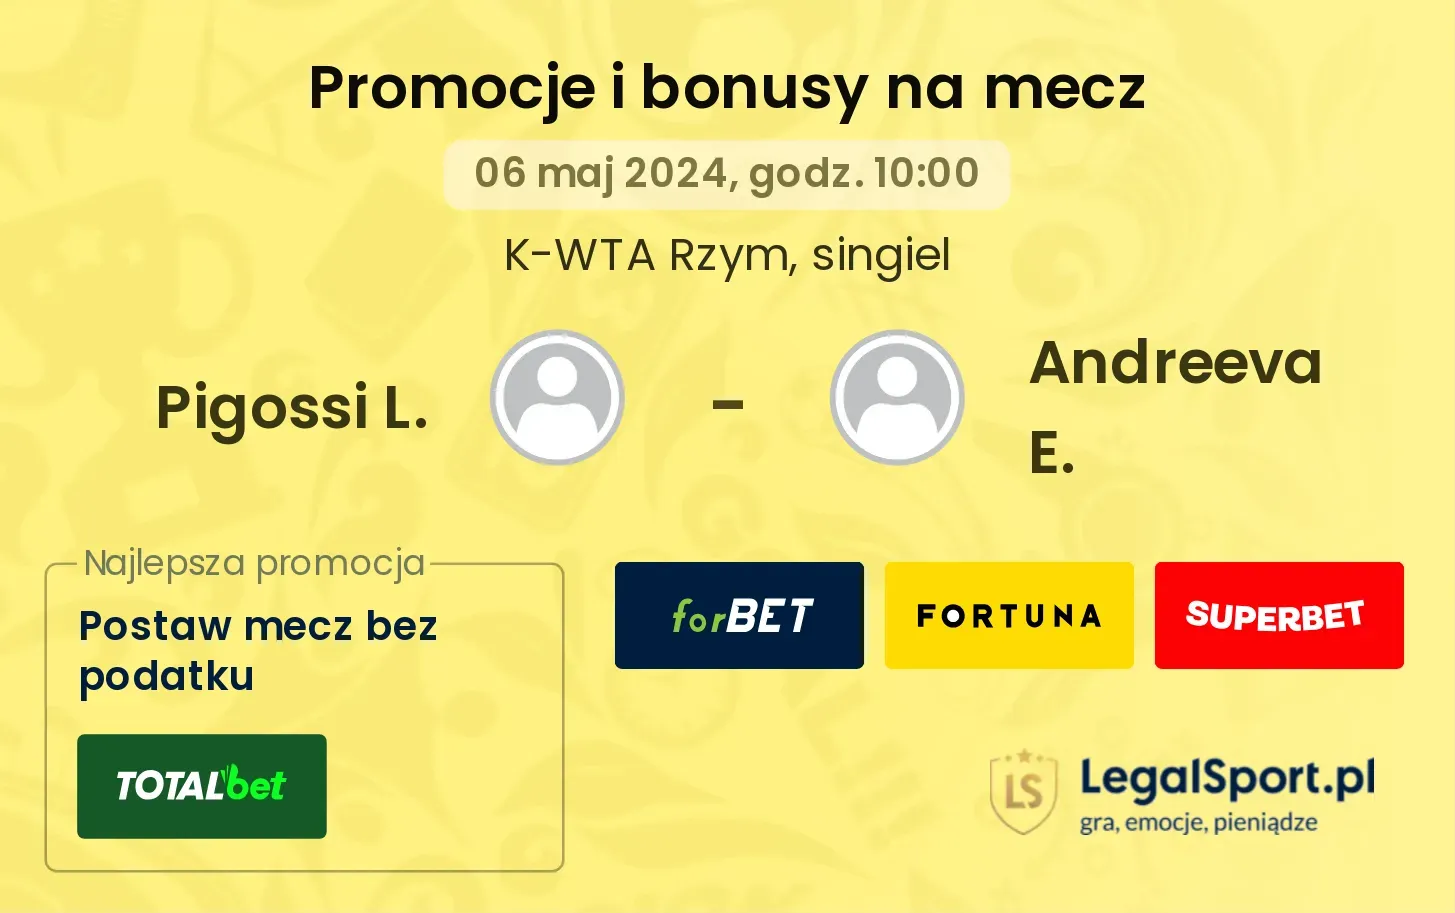 Pigossi L. - Andreeva E. promocje bonusy na mecz